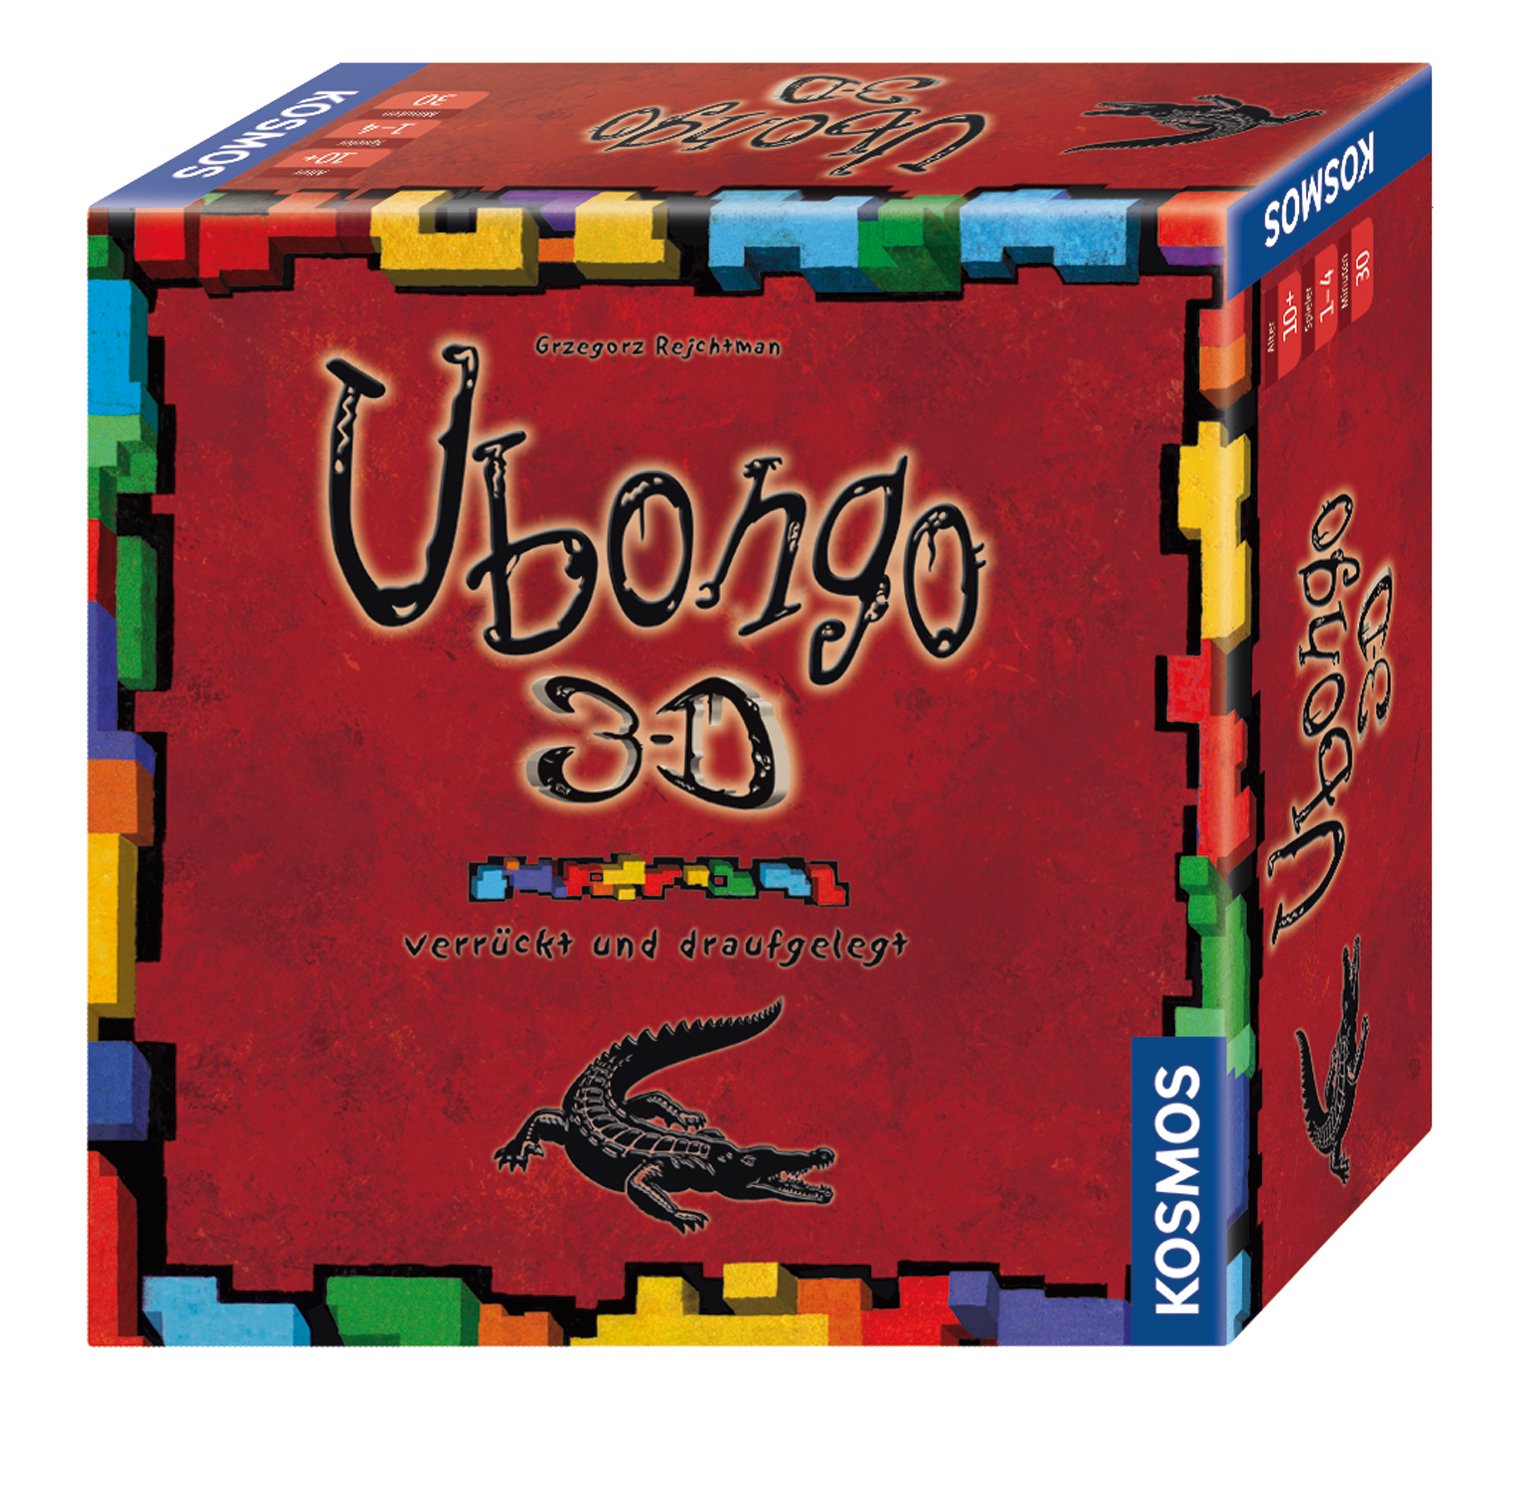 Kosmos 690847 Ubongo 3D Brettspiel, Wildes Legespiel für 3D-Knobelexperten, Brettspiel, Dreidimensionales Legespiel ab 10 Jahren, fördert logisches Denkvermögen